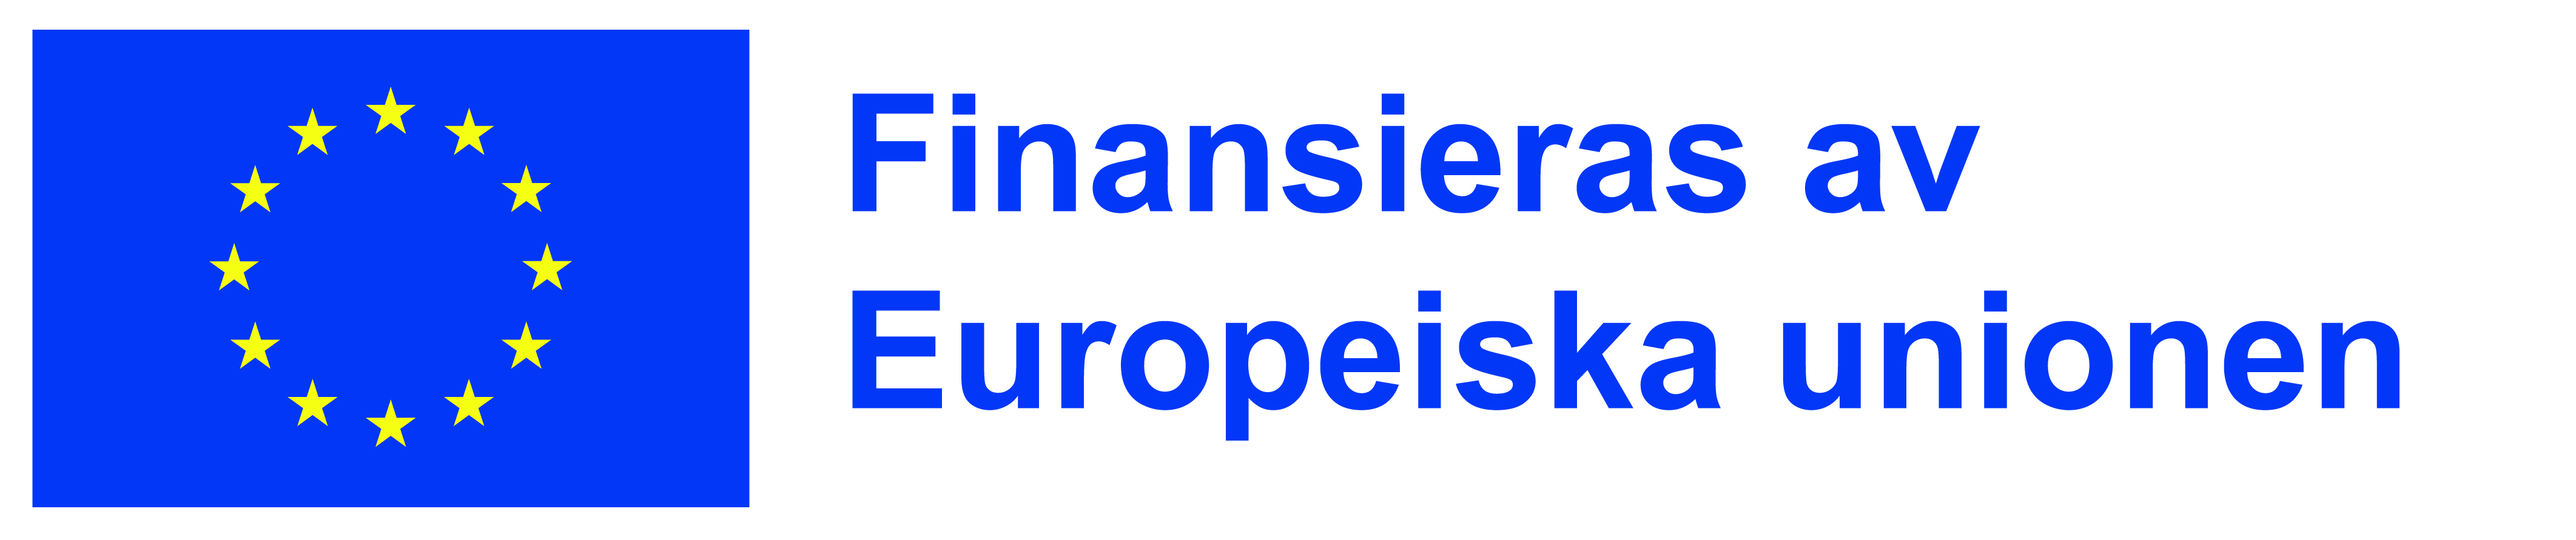 Logga Finansieras av Europeiska Unionen. 